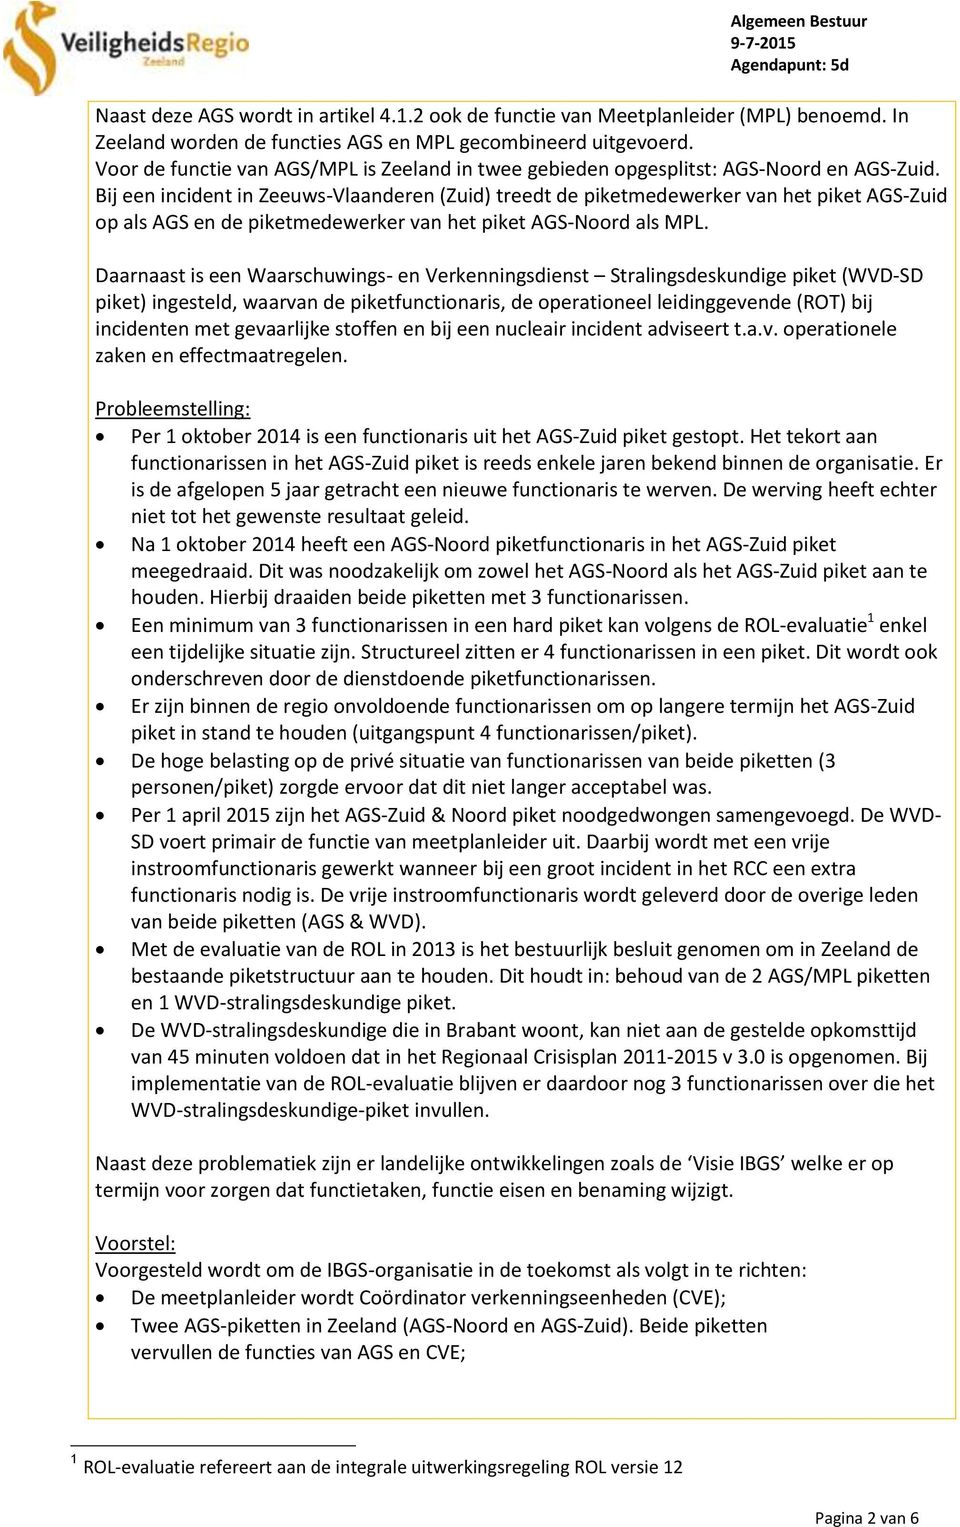 Bij een incident in Zeeuws-Vlaanderen (Zuid) treedt de piketmedewerker van het piket AGS-Zuid op als AGS en de piketmedewerker van het piket AGS-Noord als MPL.